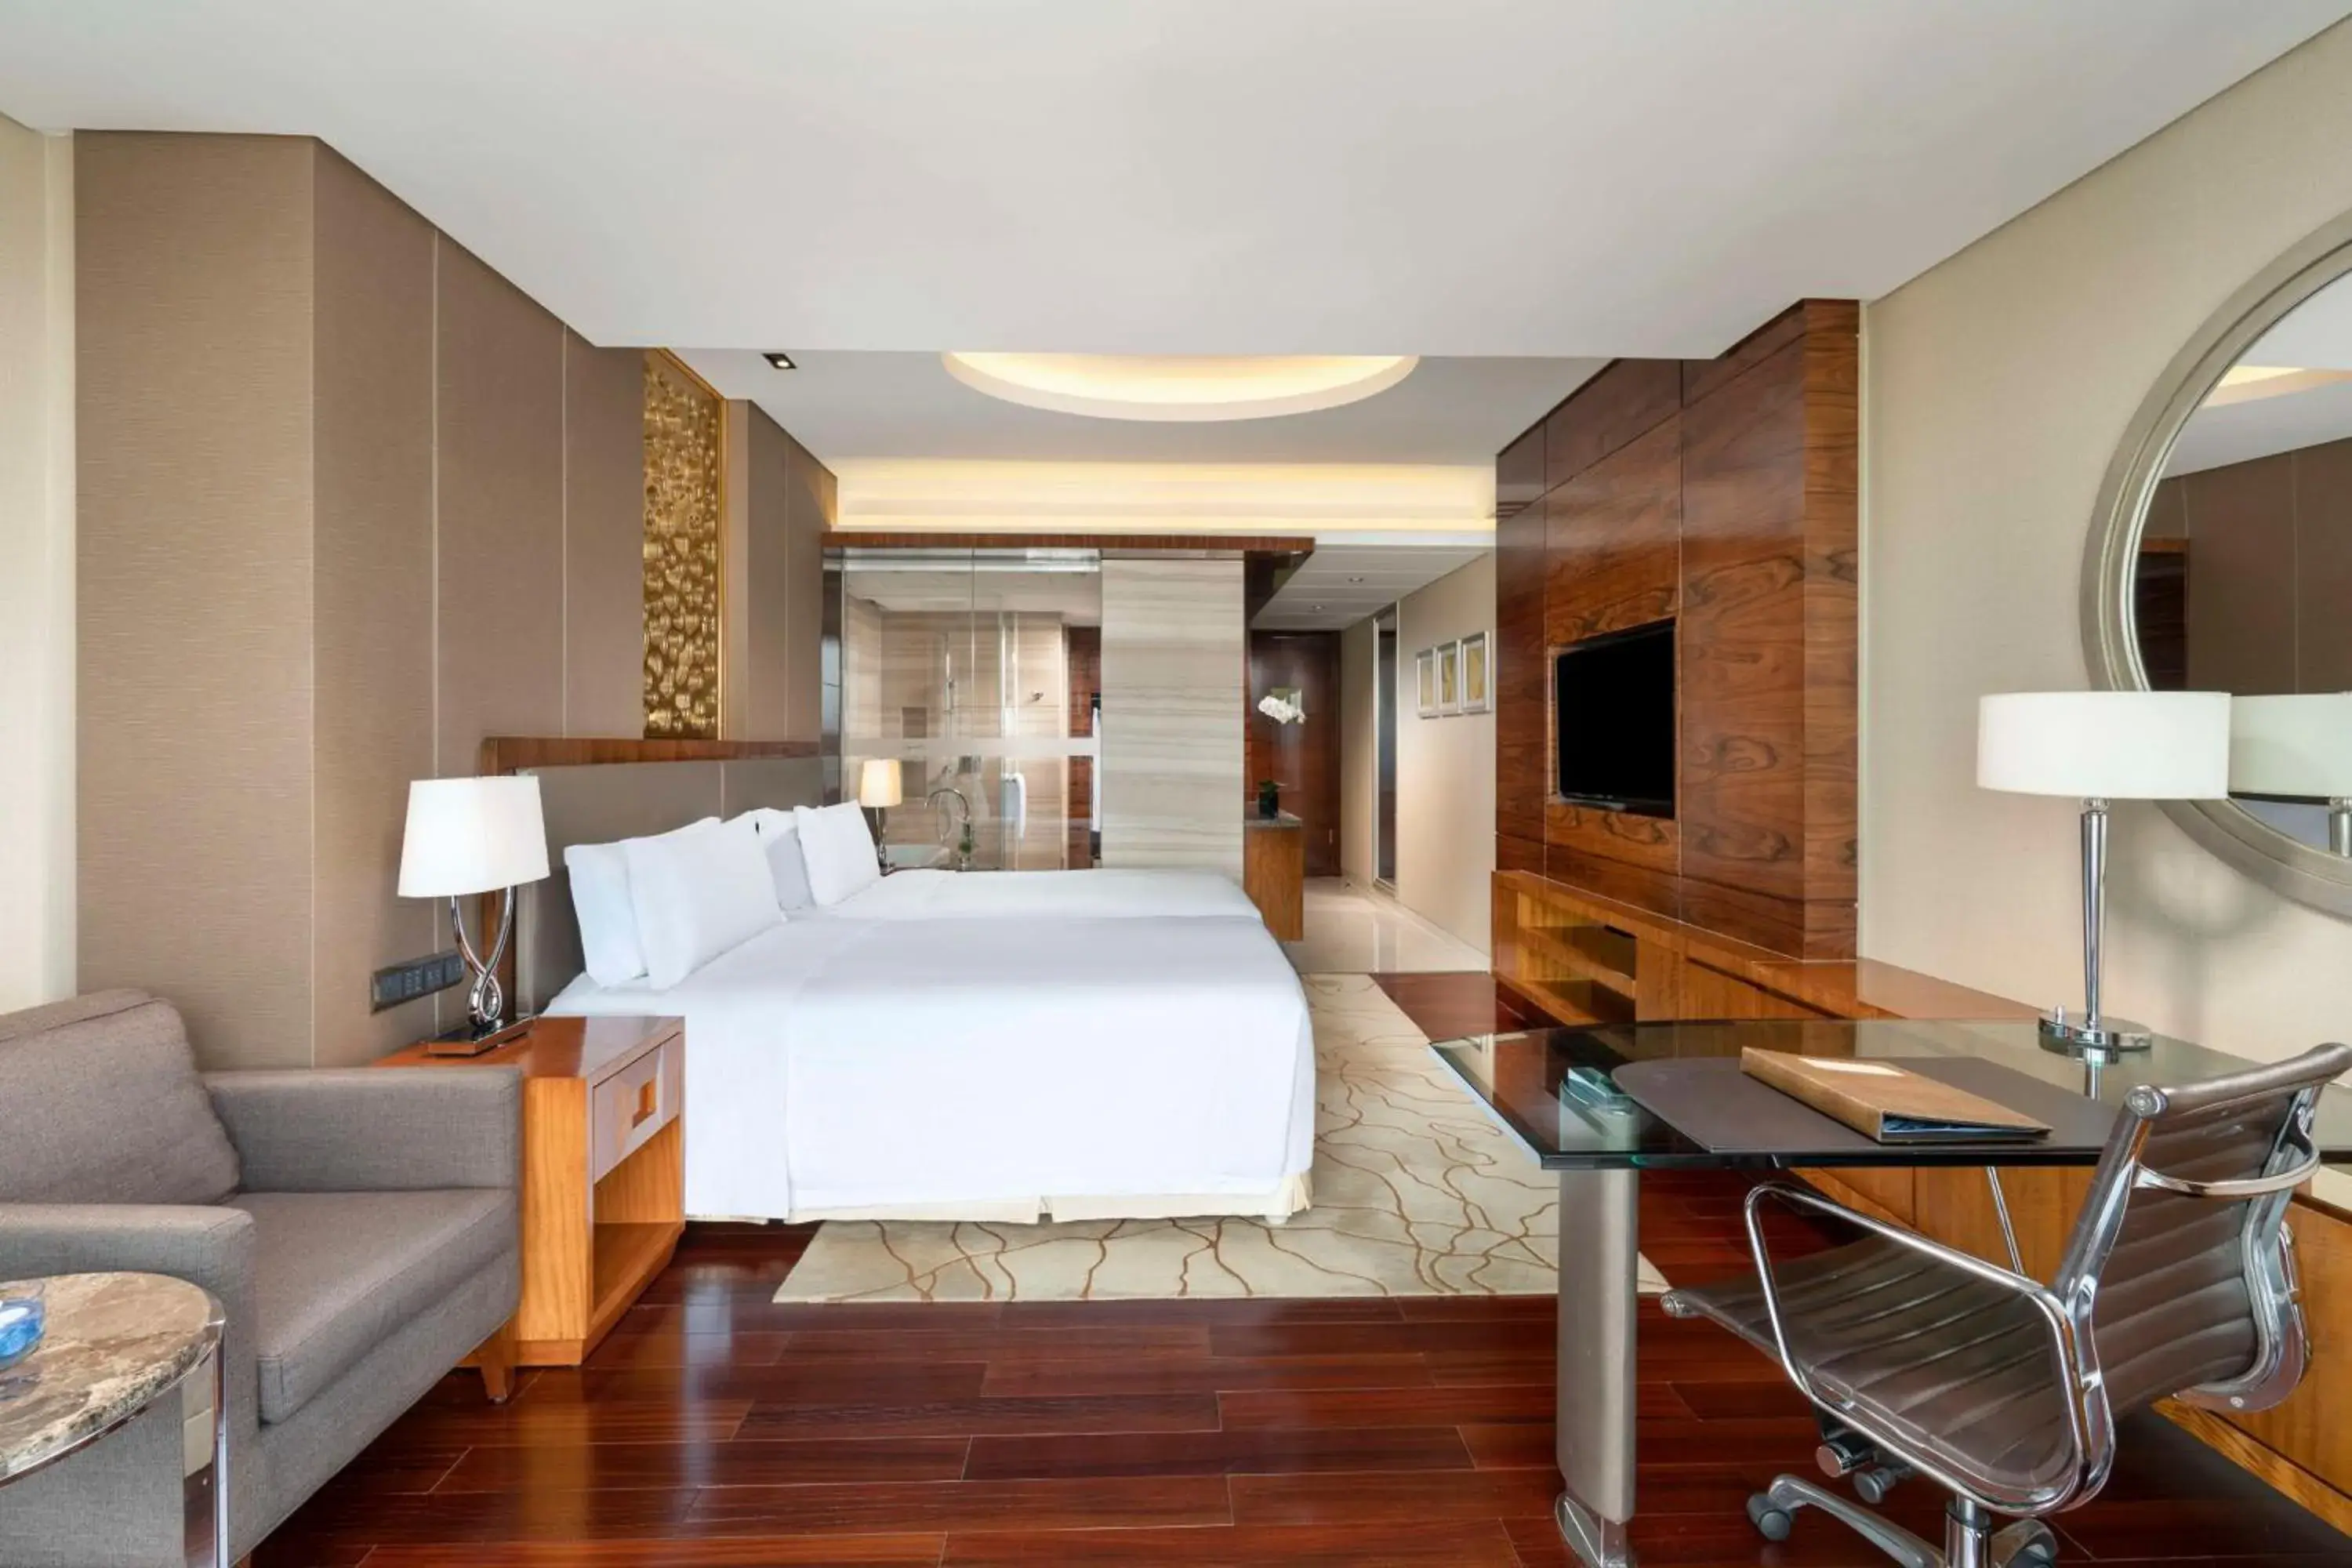 Bedroom in Kempinski Hotel Taiyuan